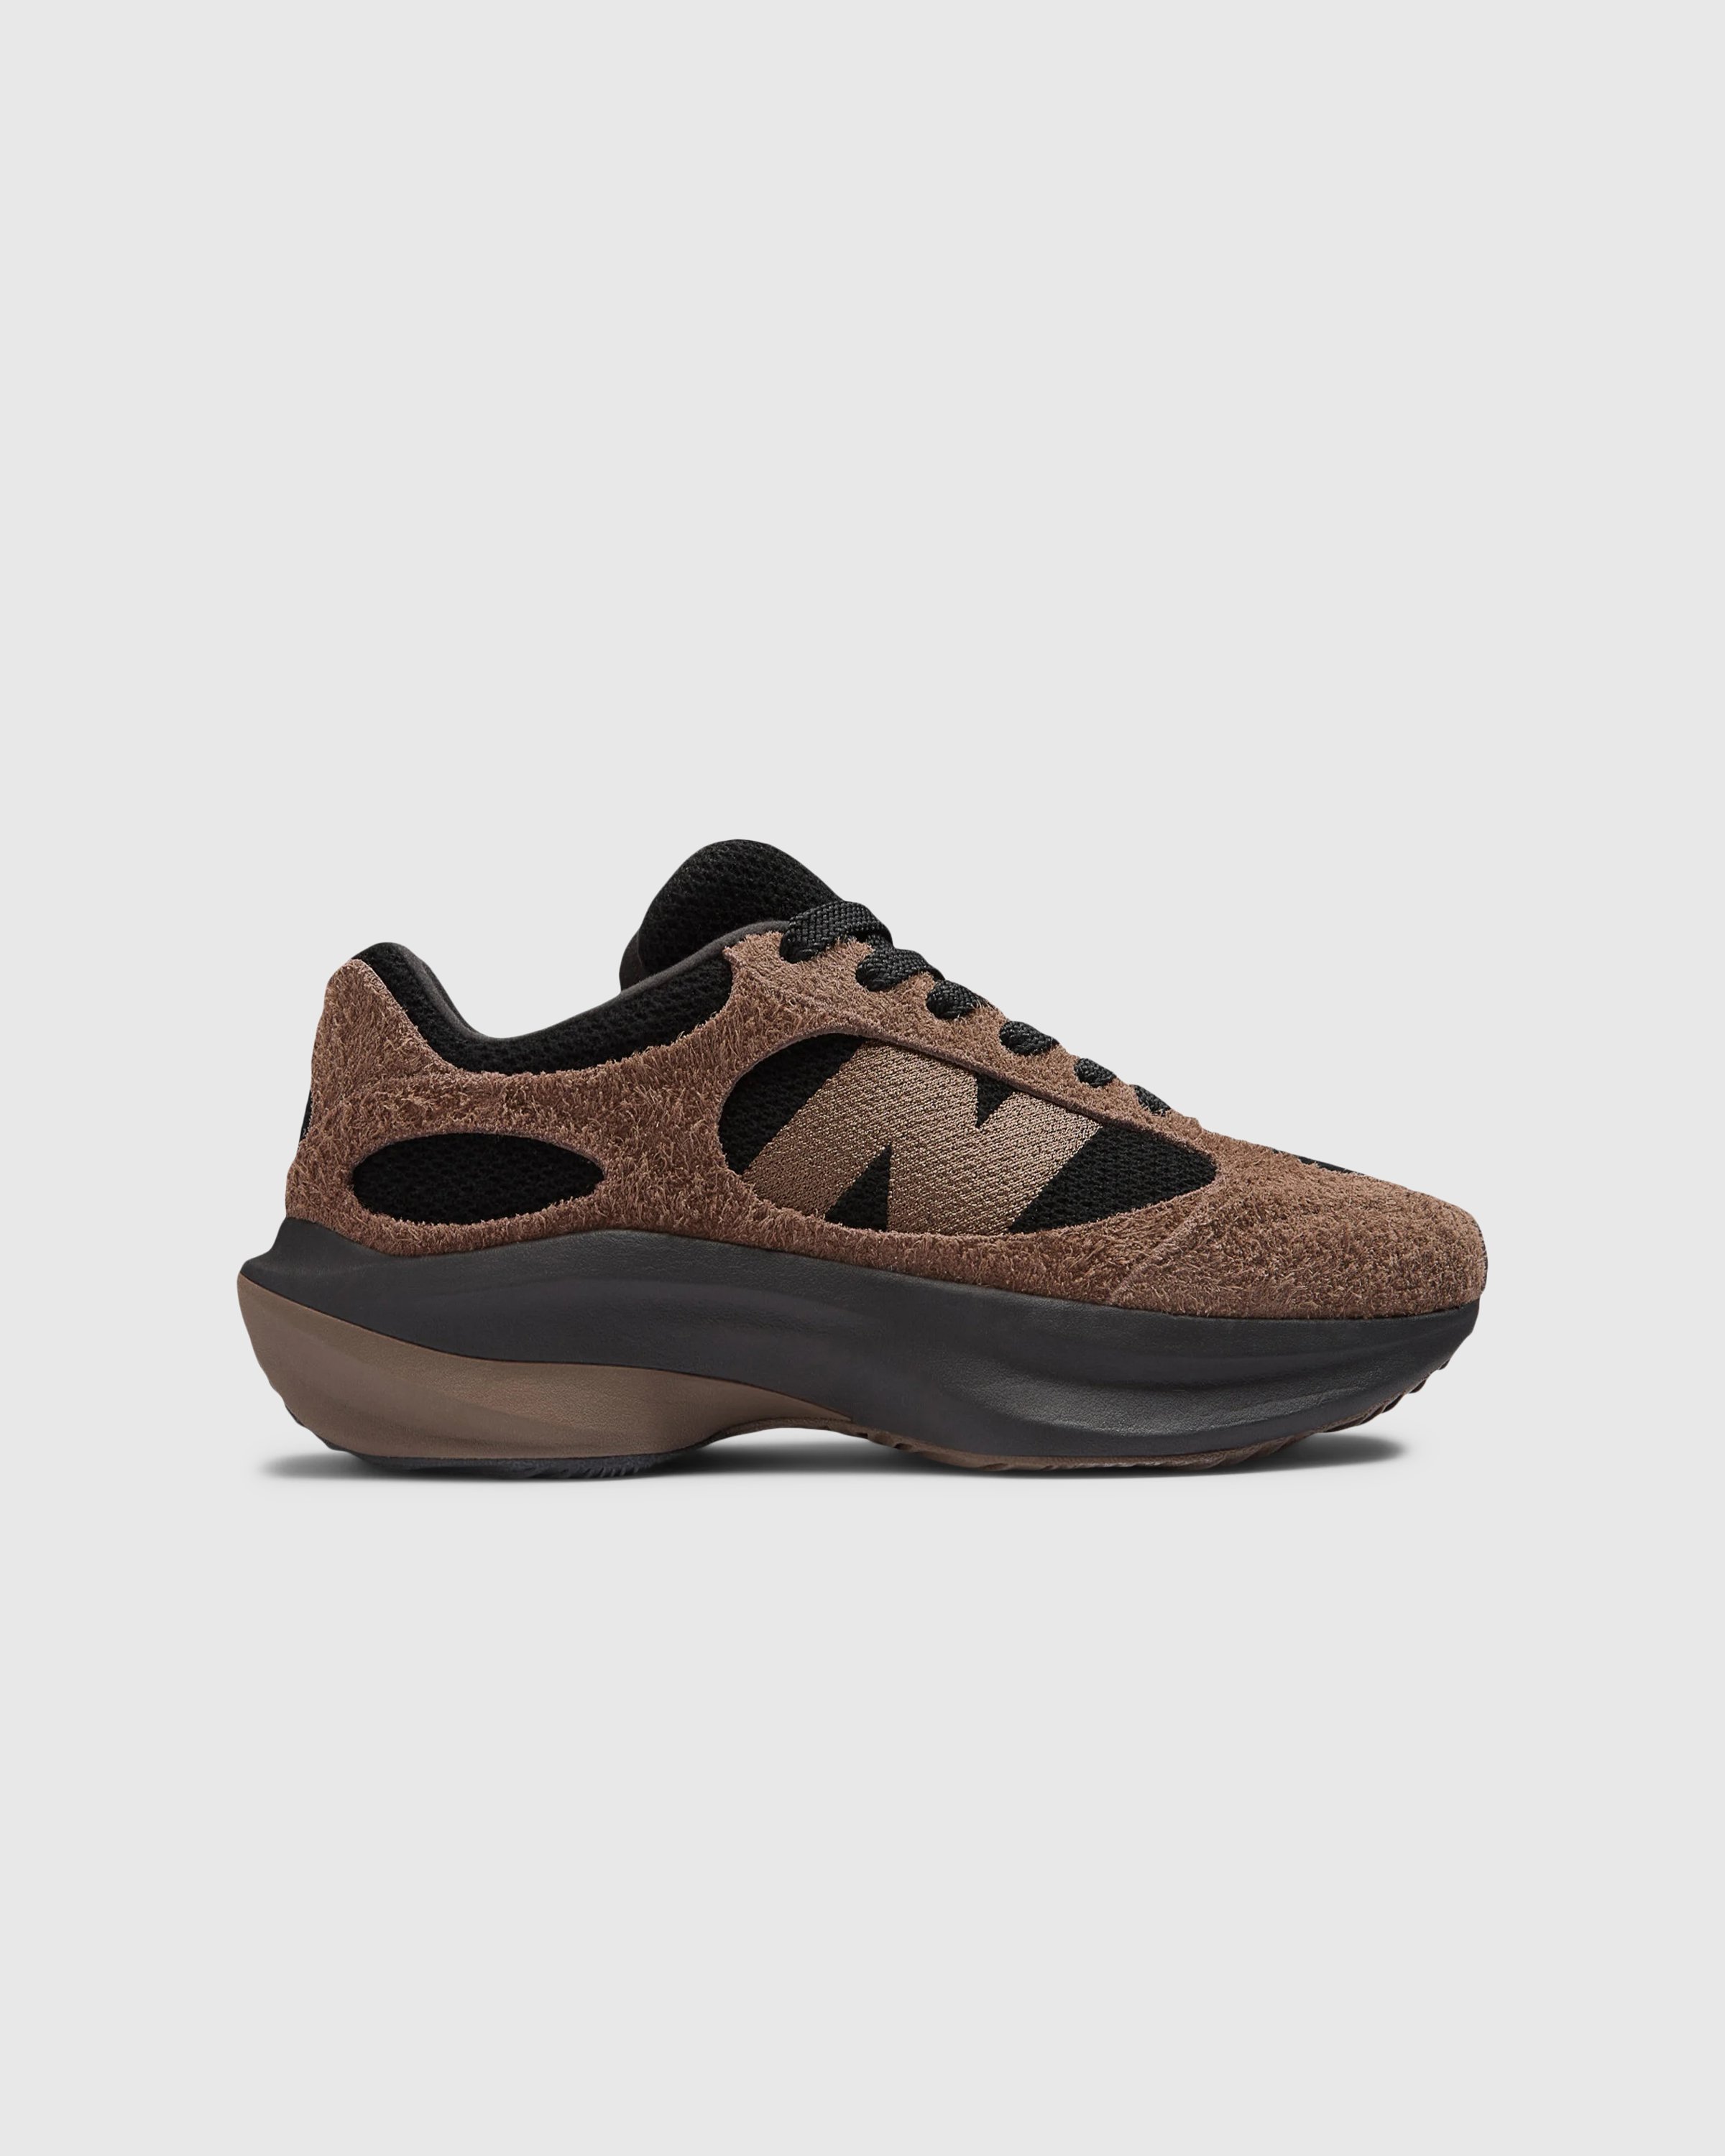 New Balance - WRPD Runner Dark Mushroom - Footwear - Brown - Image 1